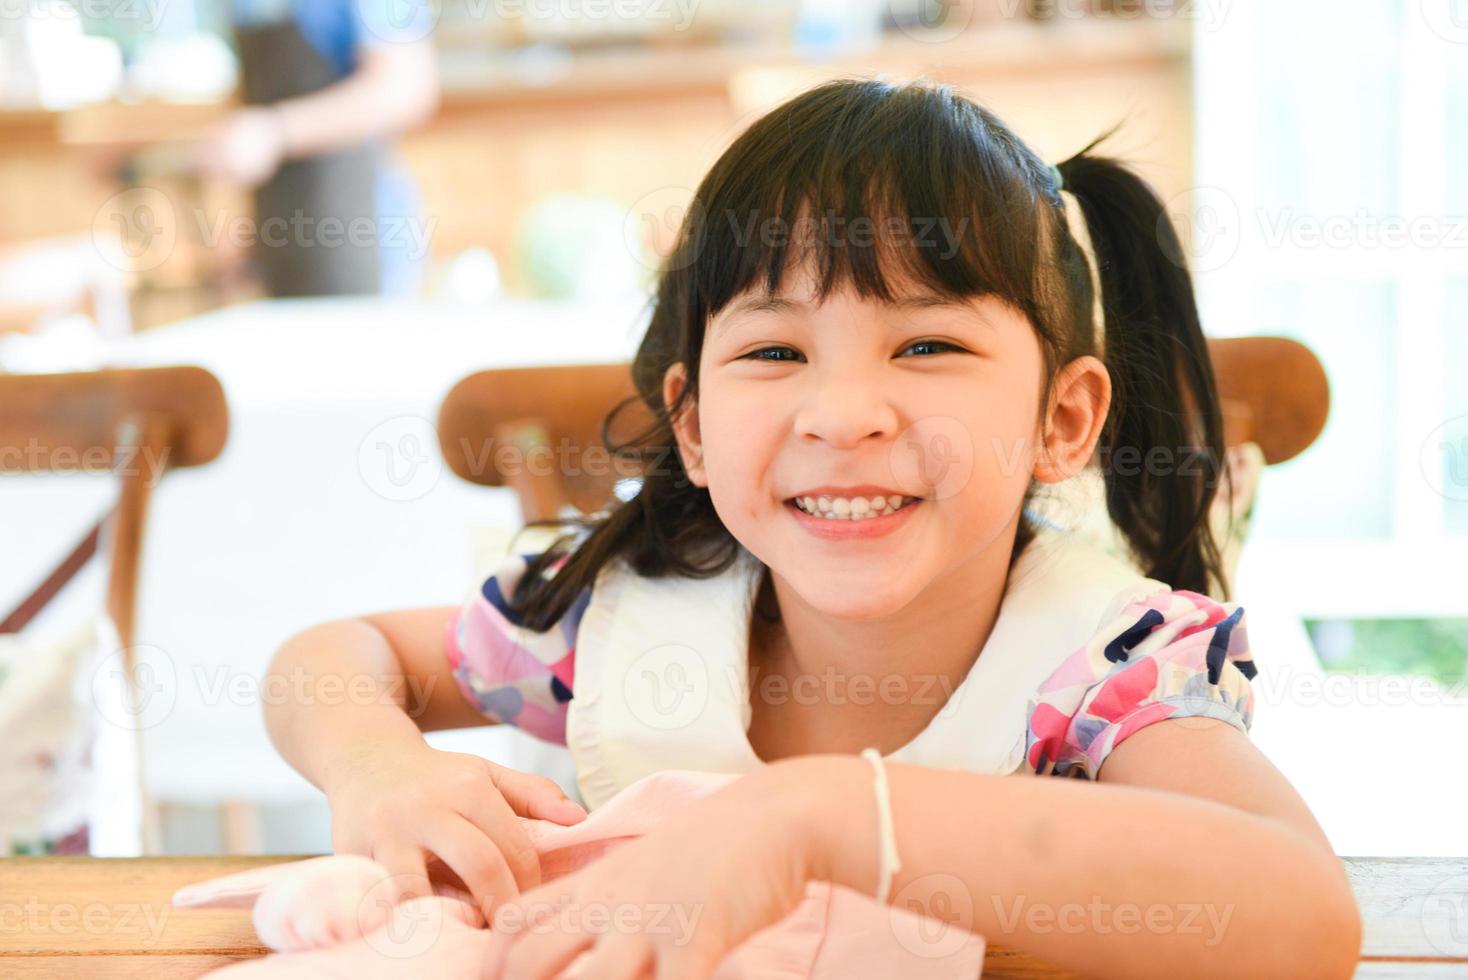 klein aziatisch kindmeisje veel plezier met een gelukkig lachend gezicht in het café, schattige meisjeskinderen die een eettafelrestaurant spelen. foto